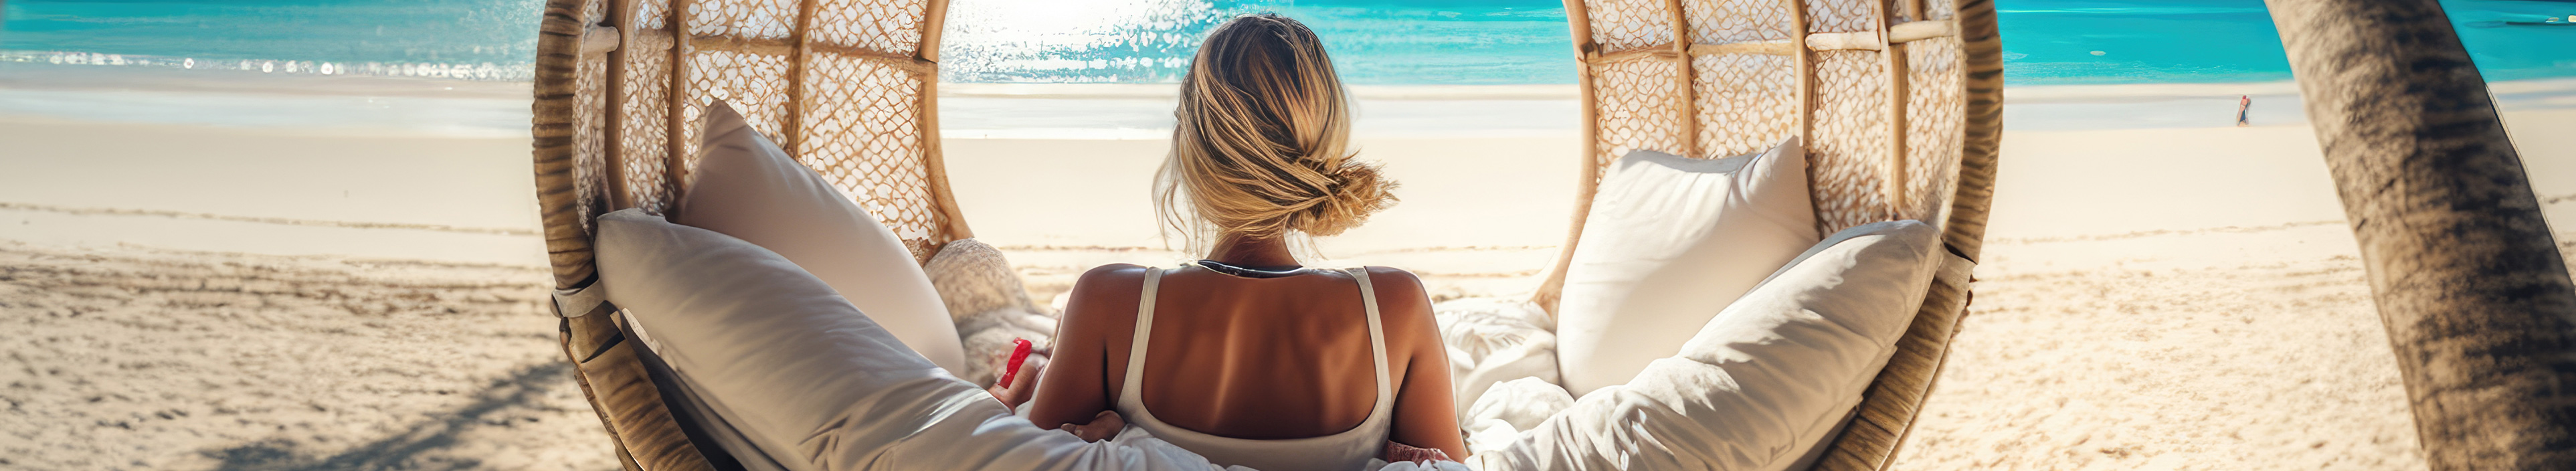 Eine Frau entspannt sich und genießt die Sonne im Urlaub am Strand in einer Korbhängematte